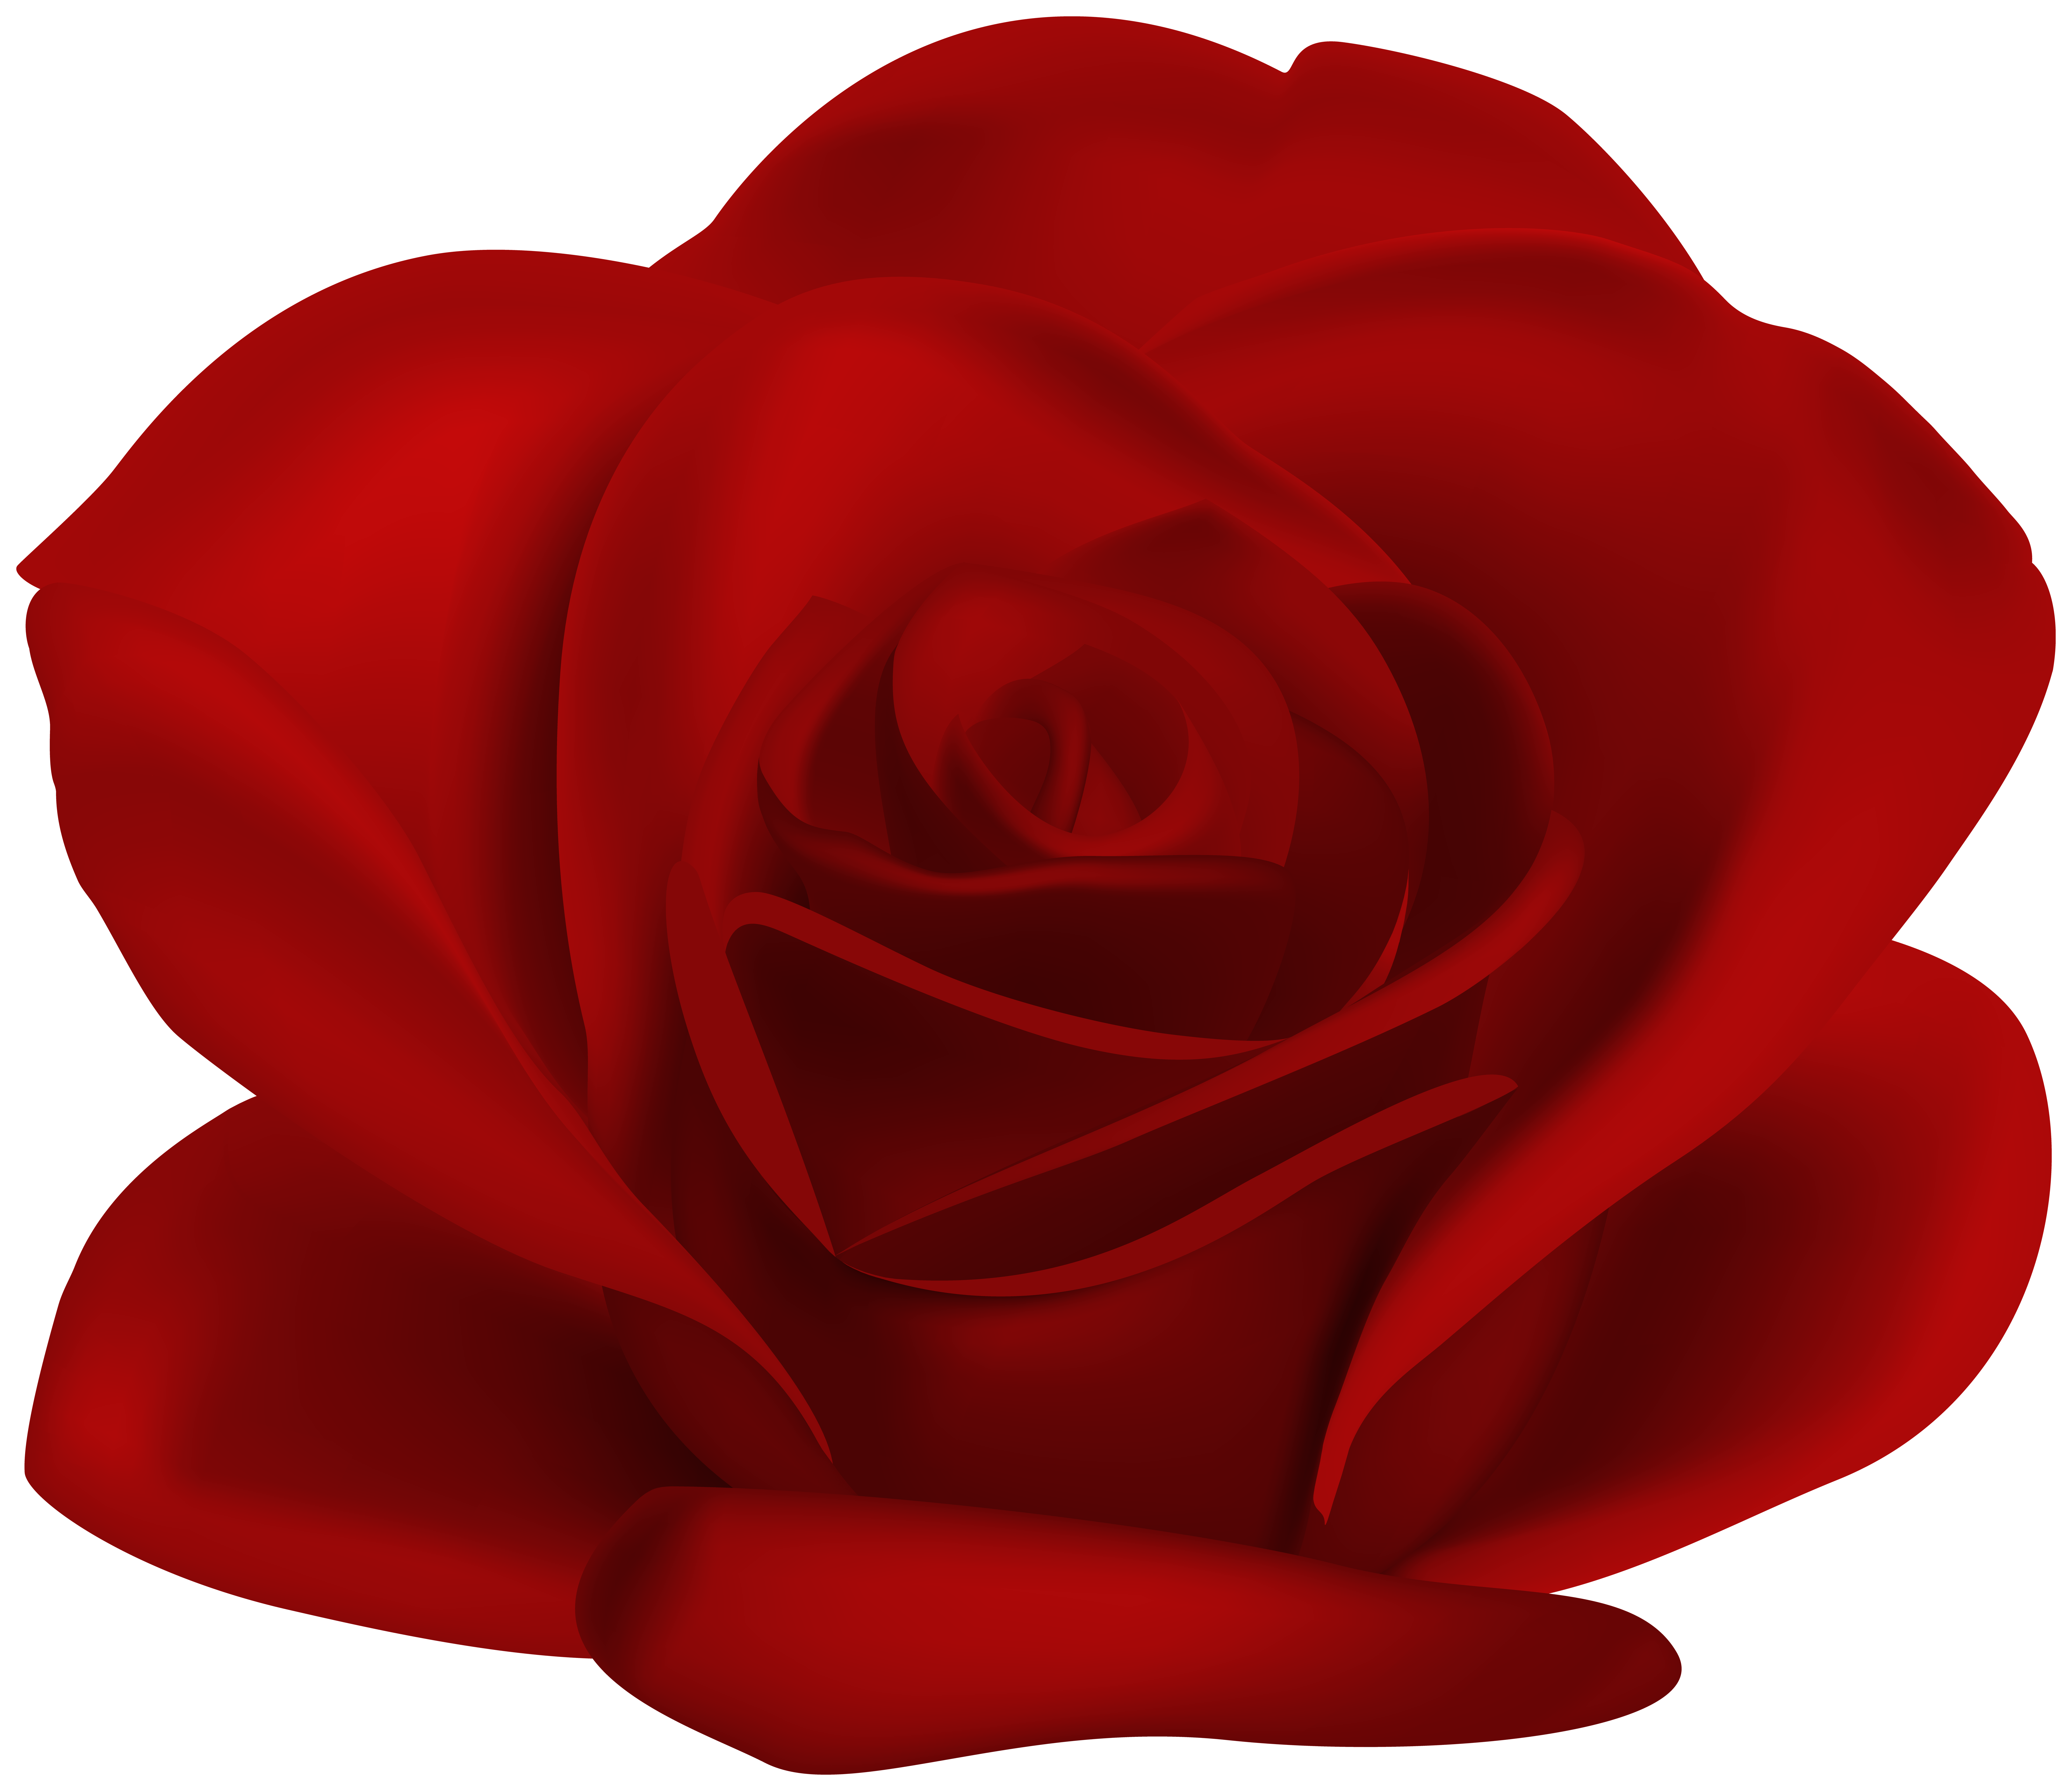 Red Flower Rose Transparent Image.